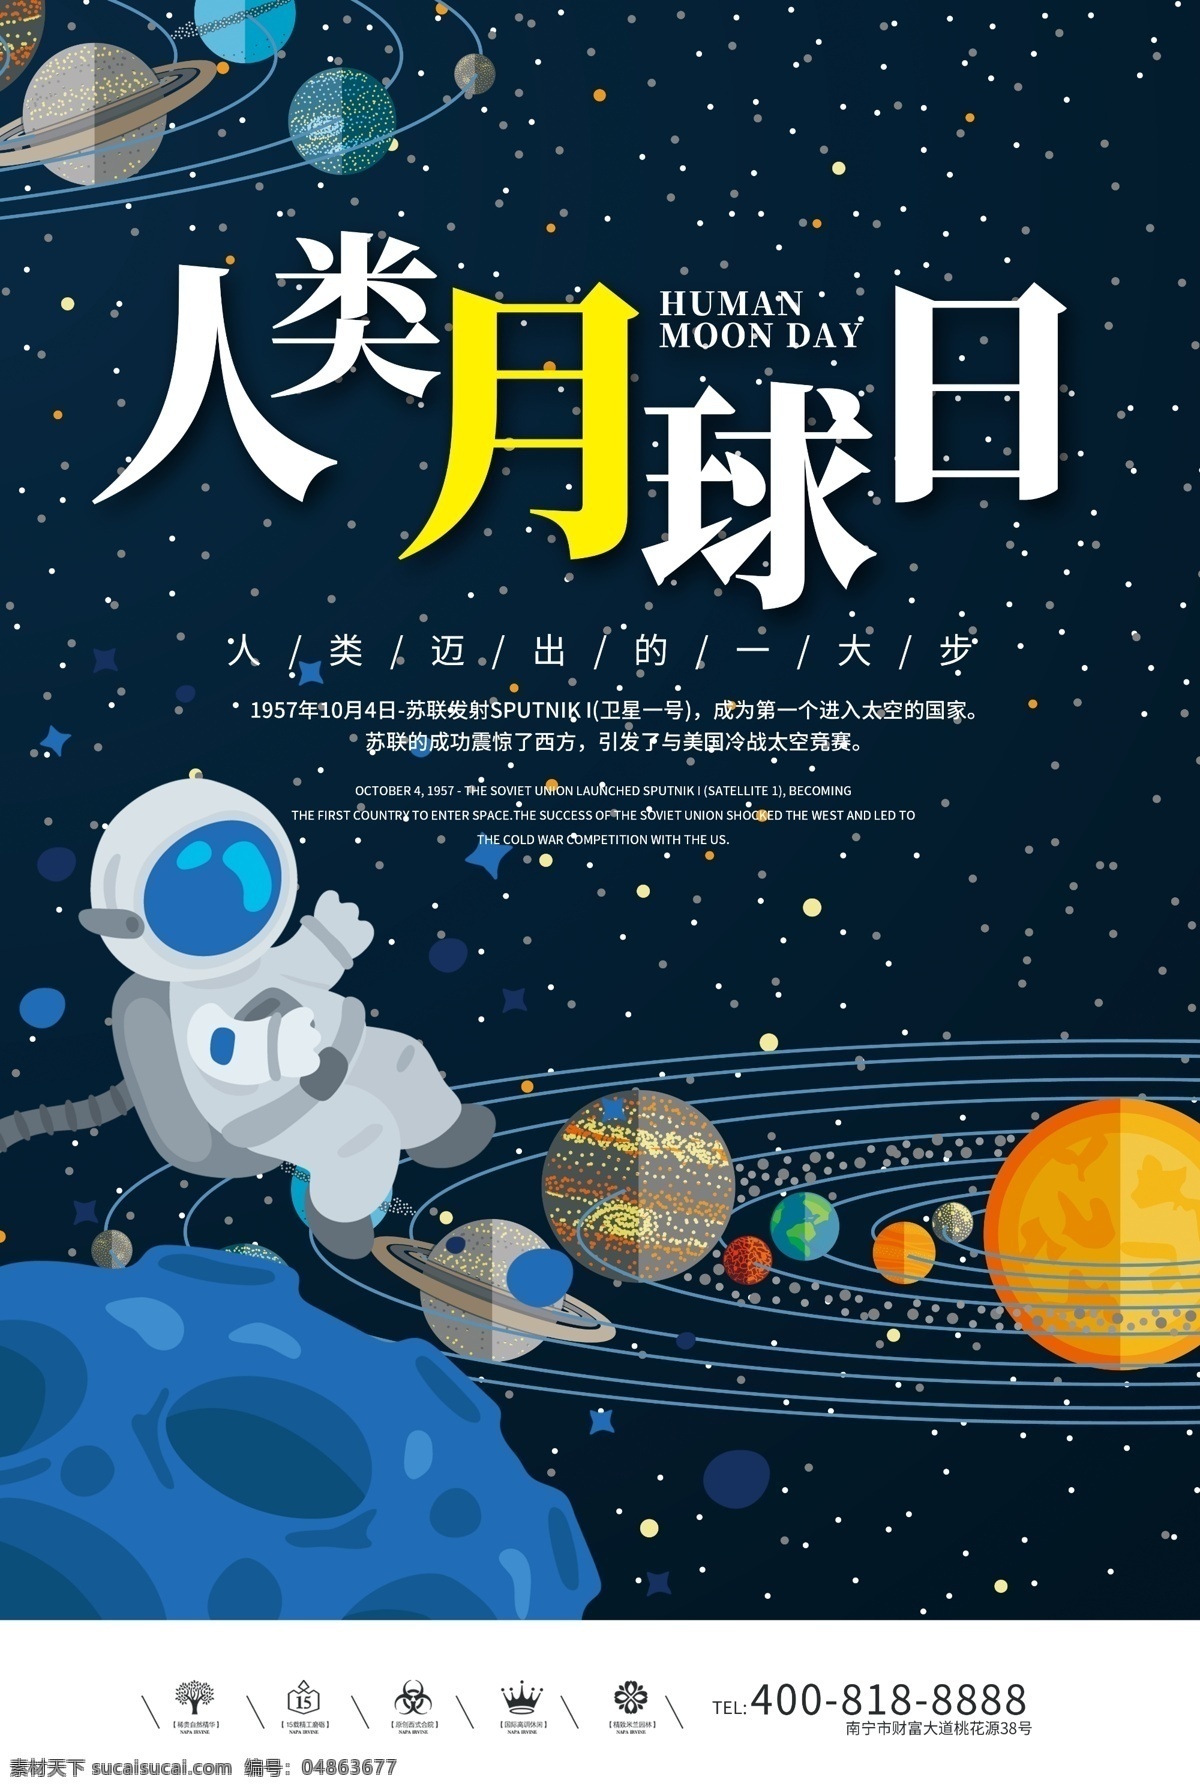 创意 人类 月球 日 户外 海报 嫦娥奔月 宇航员 人类月球日 探索太空 月球表面 风水球 每月之星 七星伴月 五月的风 玉兔号月球车 蓝月亮 月球纪念币 阿波罗 月亮日 阿姆斯特朗 免费模版